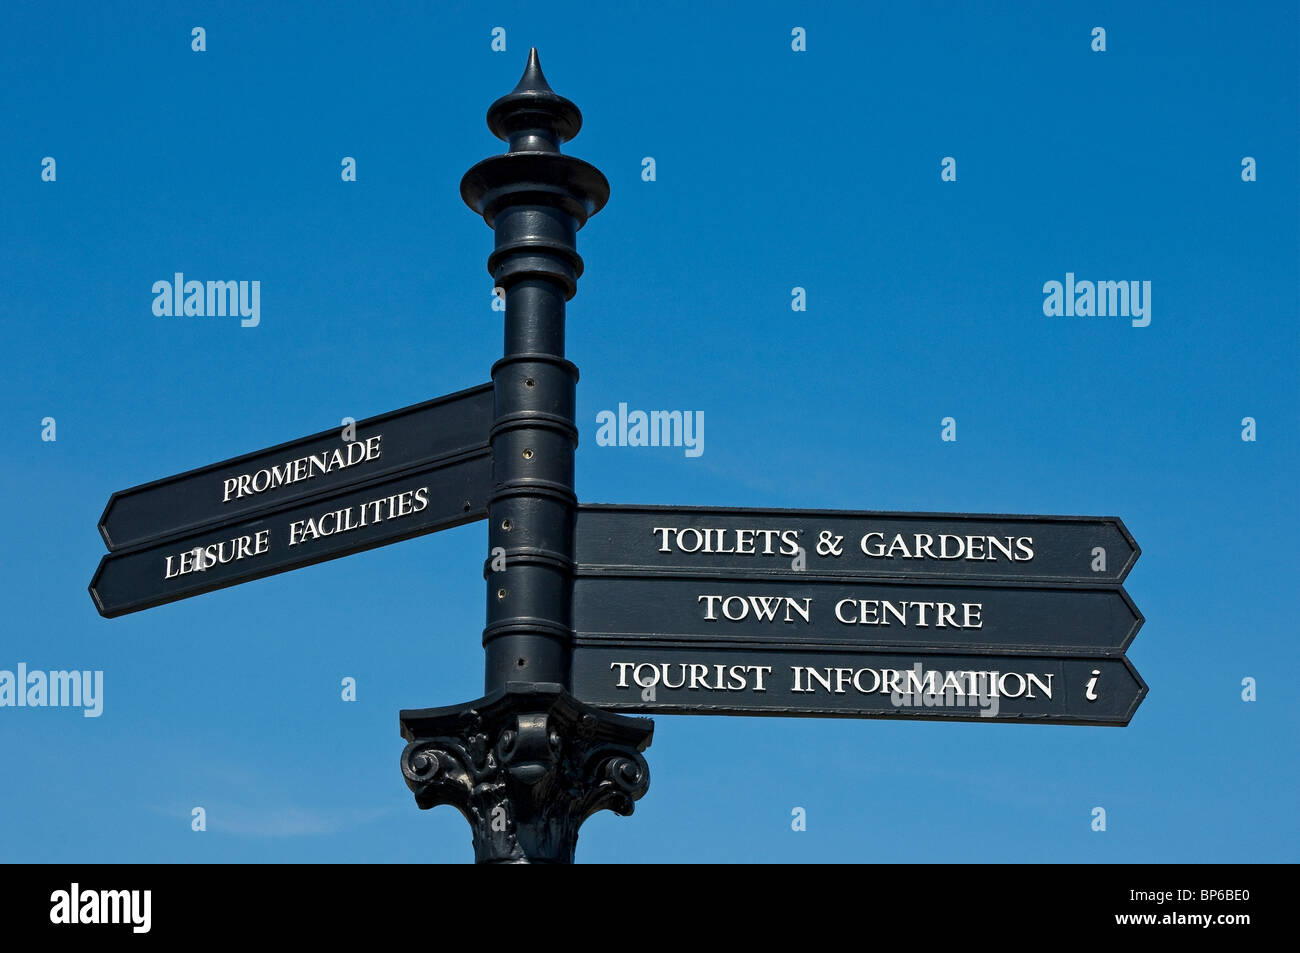 Gros plan du panneau d'information touristique contrastant avec le bleu Sky Grange-over-Sands Cumbria Angleterre Royaume-Uni GB Grande-Bretagne Banque D'Images